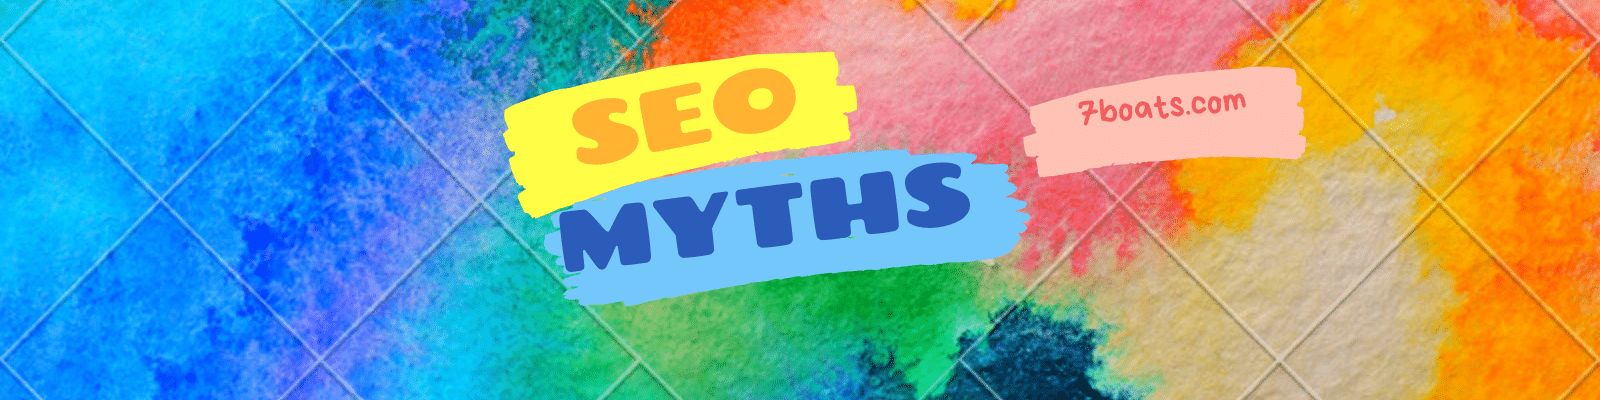 Some Major SEO Myths Busted – Most common SEO myths